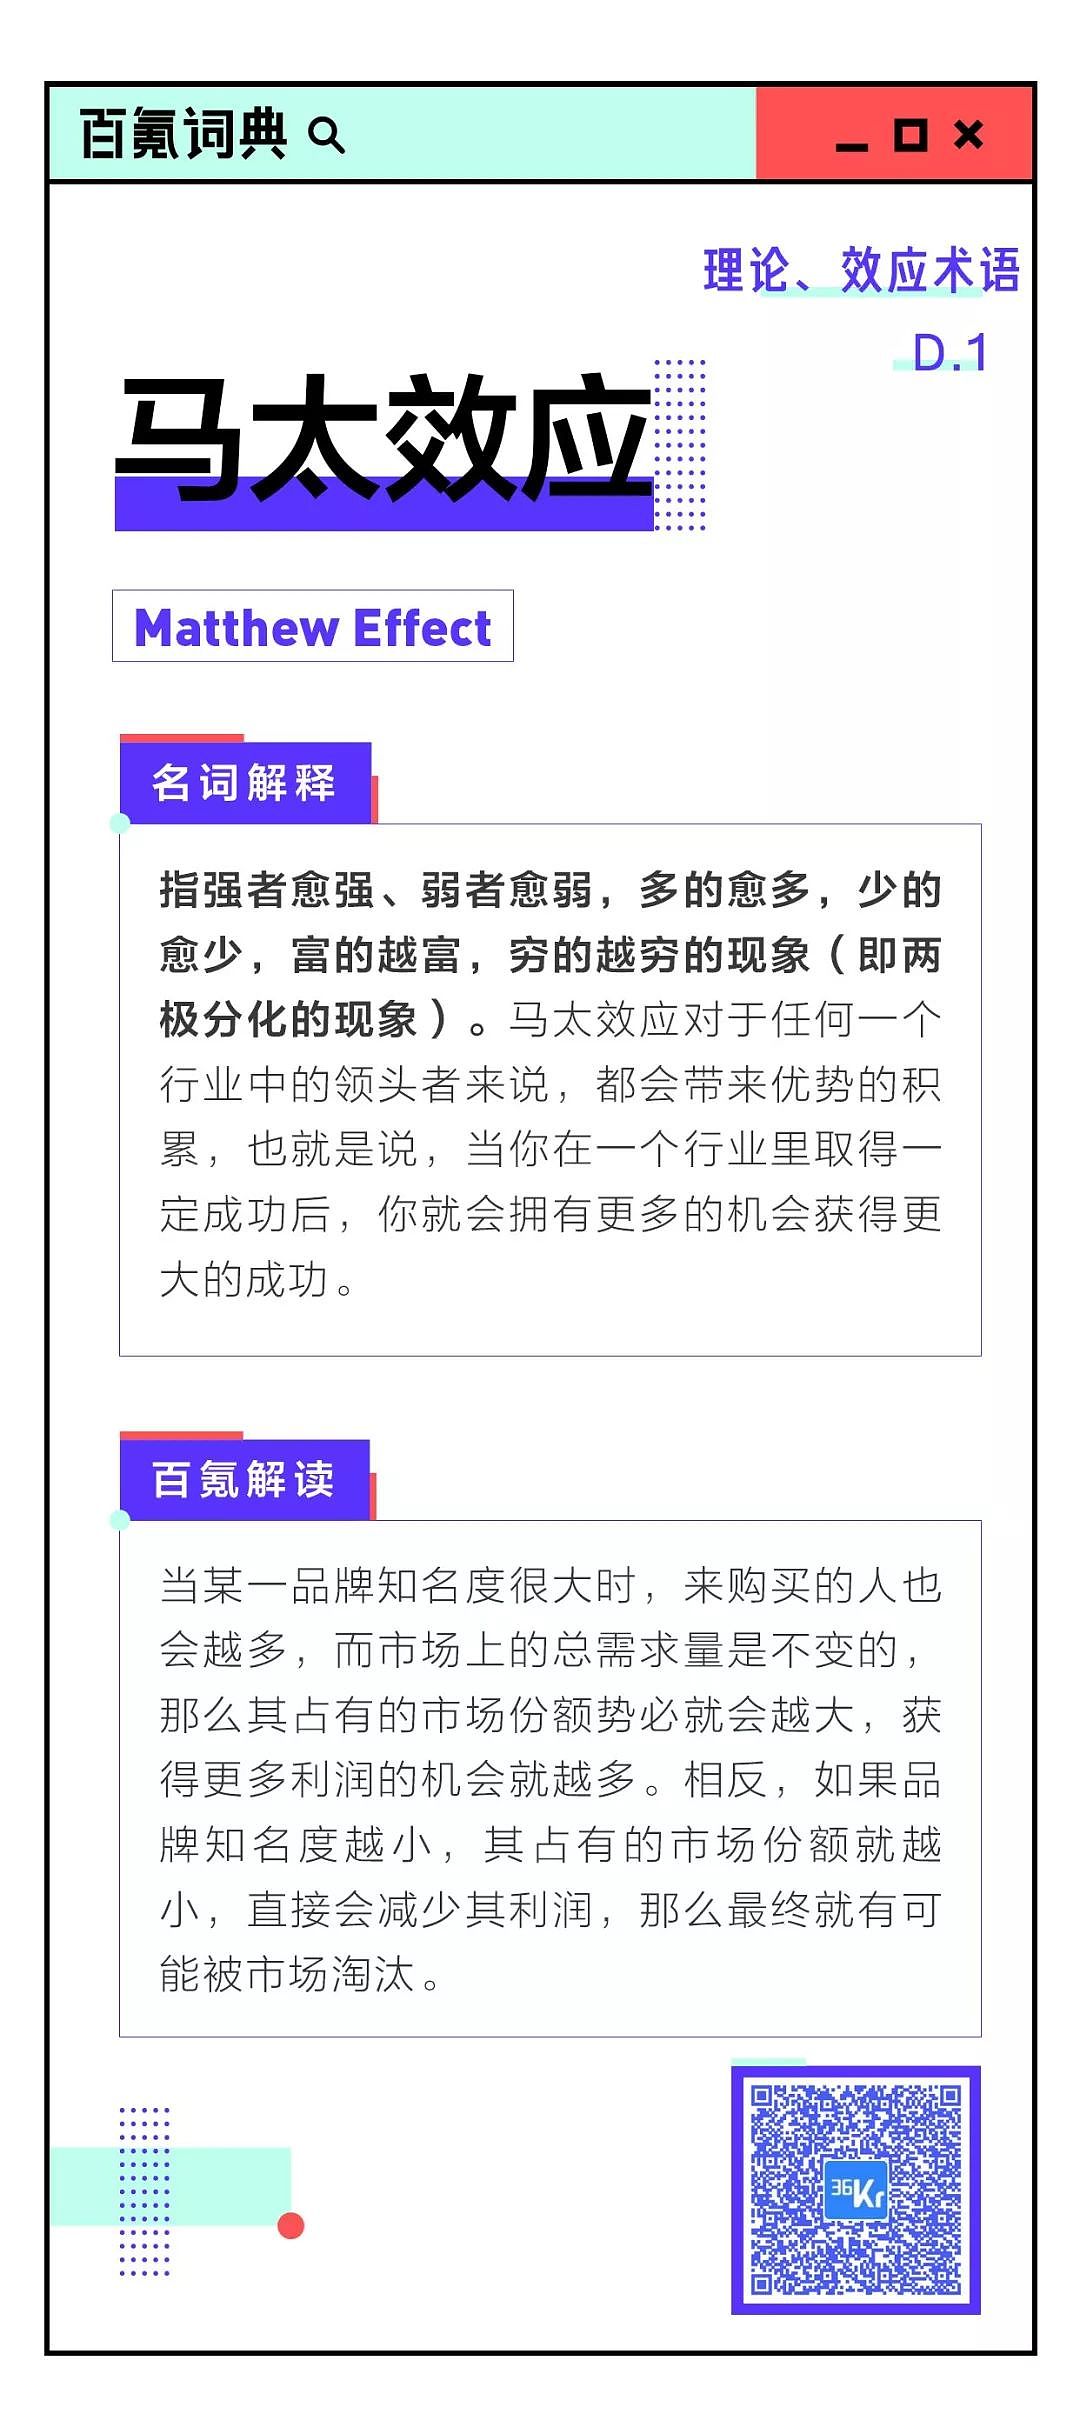 8点1氪：传新 iPhone 9月12日发布，售价万元以上；网易云音乐称遭遇集中造谣；中国将于2020年首探火星 - 13